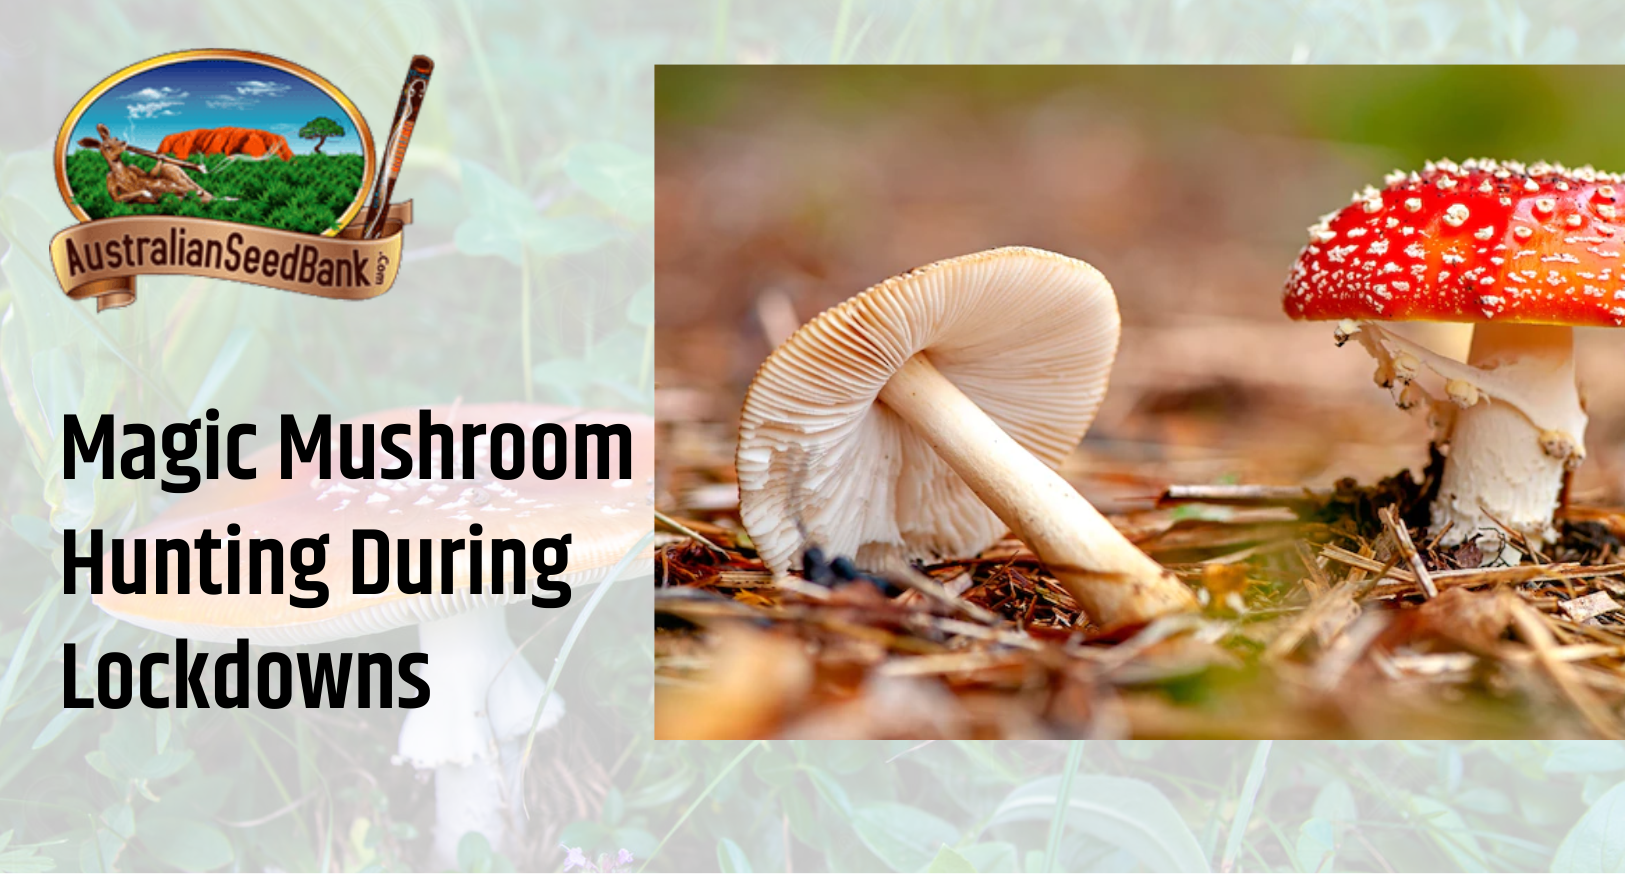 Magic Mushroom Hunting during Lockdowns